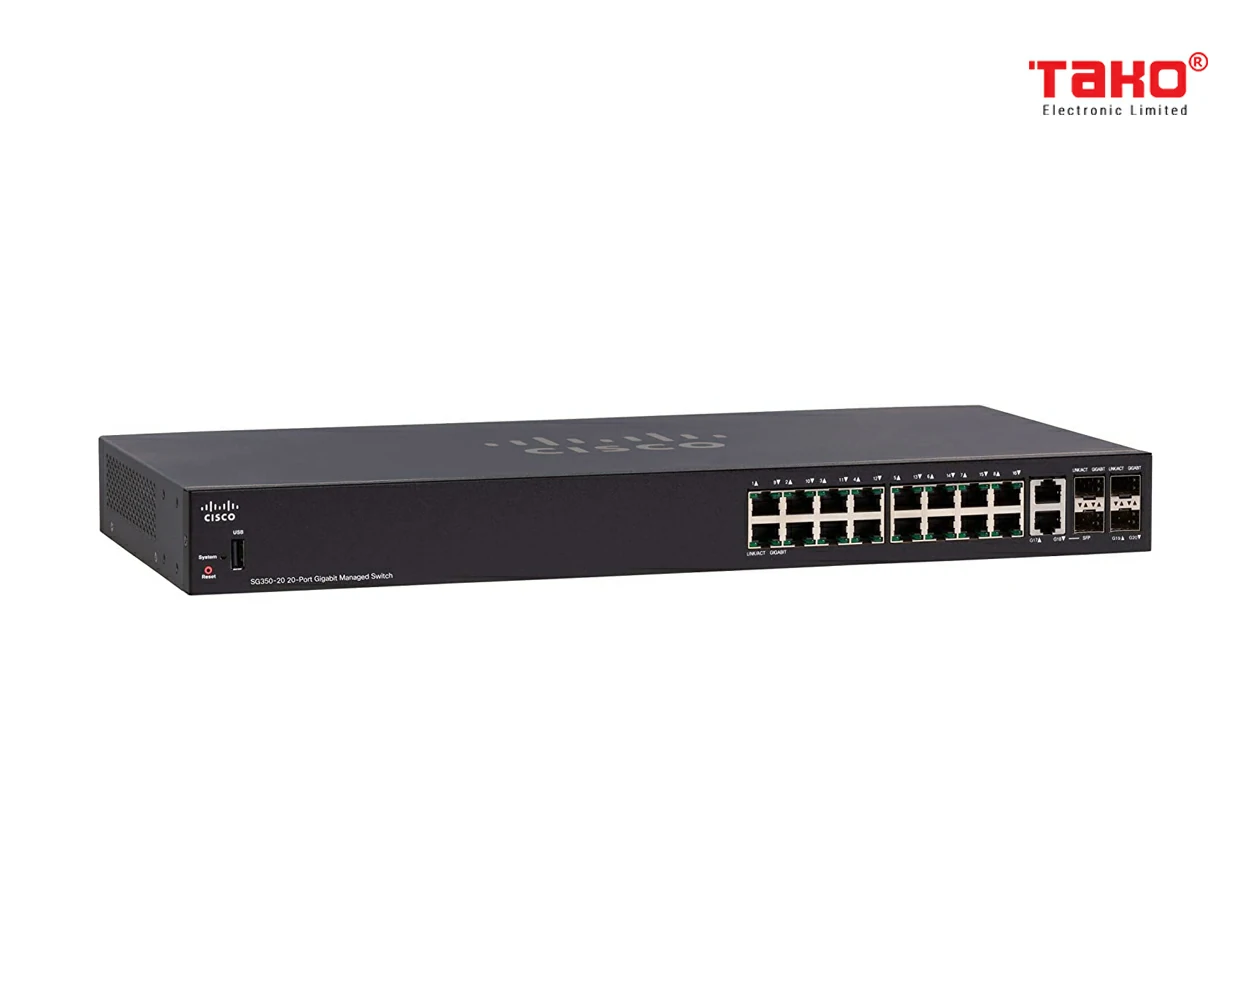 Switch quản lý Cisco SG350-20 với 20 cổng Gigabit Ethernet (GbE) với 16 cổng Gigabit Ethernet RJ45 cộng với combo 2 Gigabit SFP 3